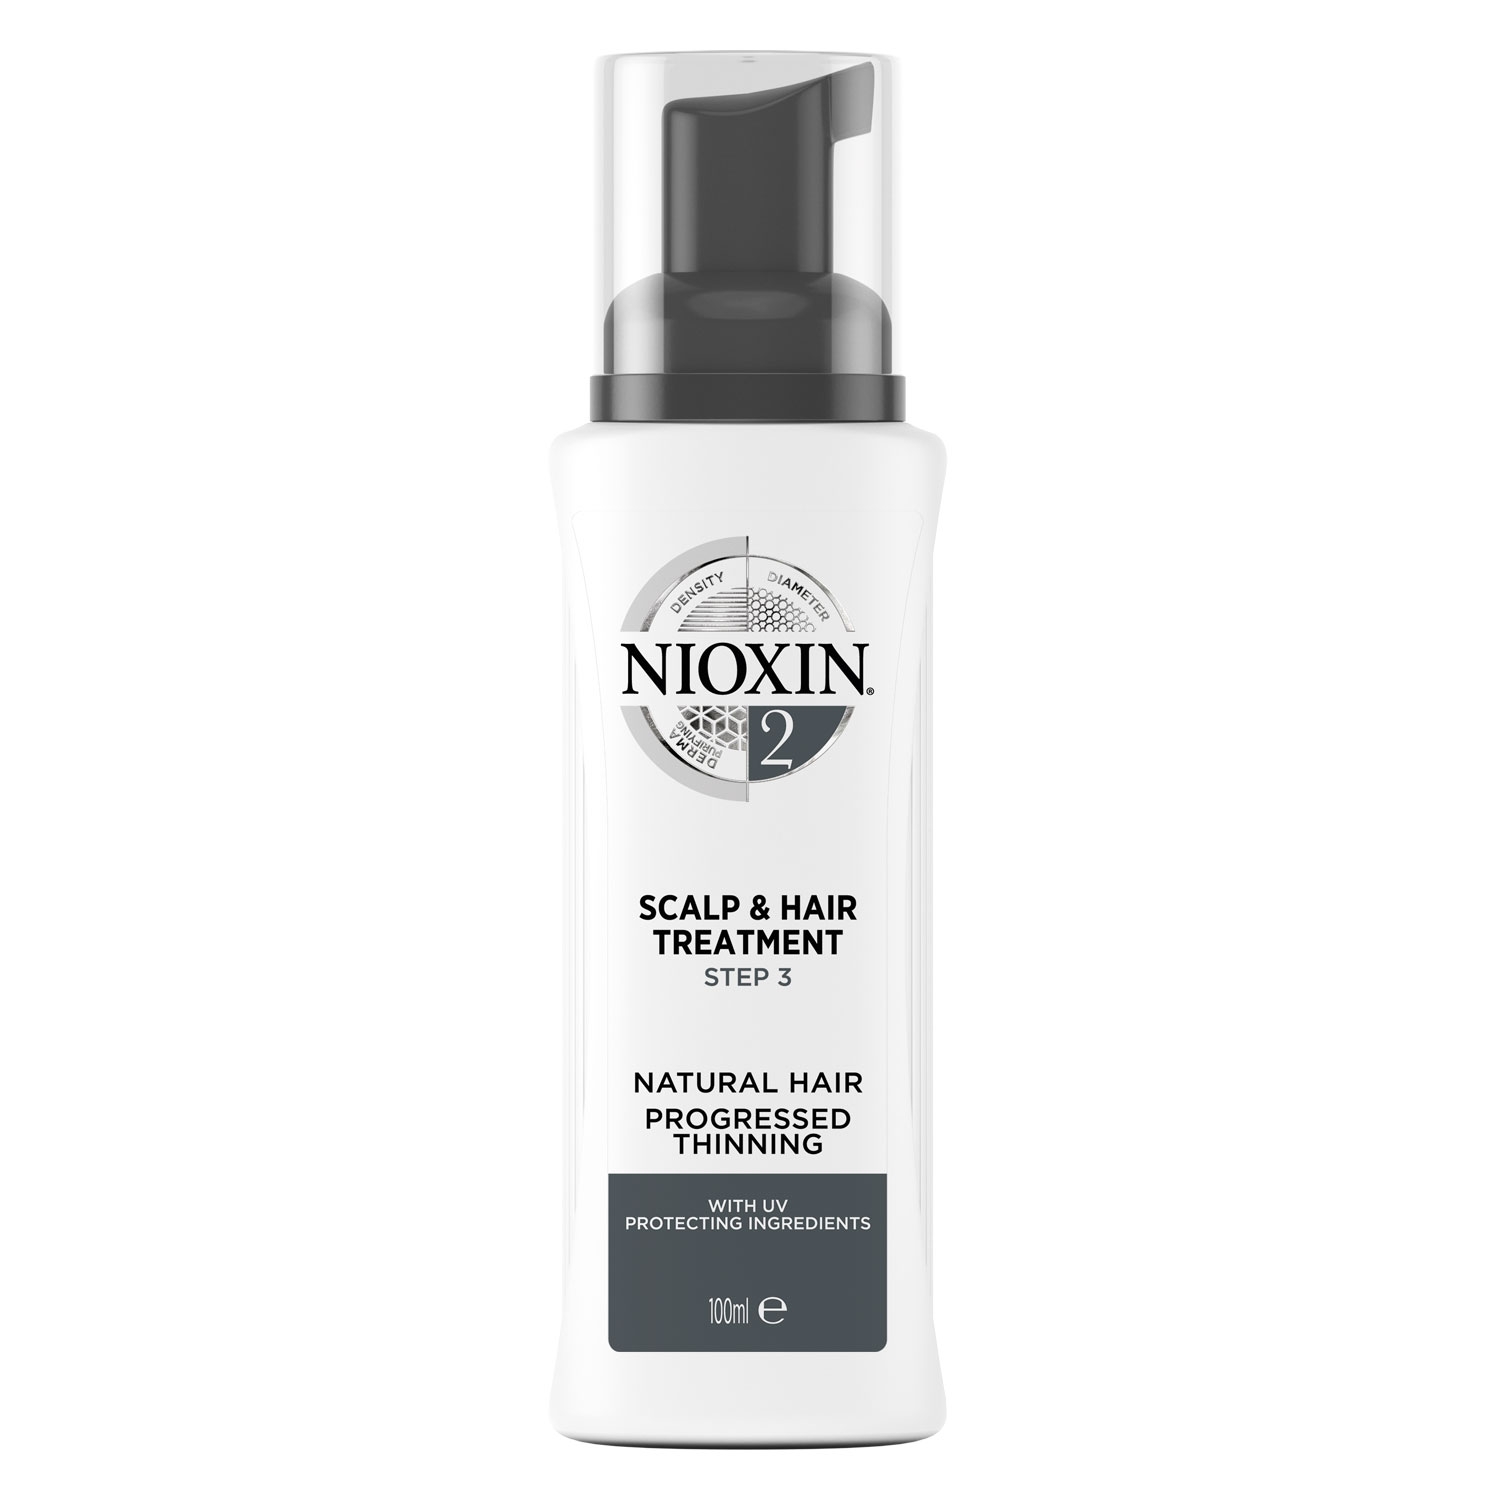 Produktbild von Nioxin - Scalp Treatment 2